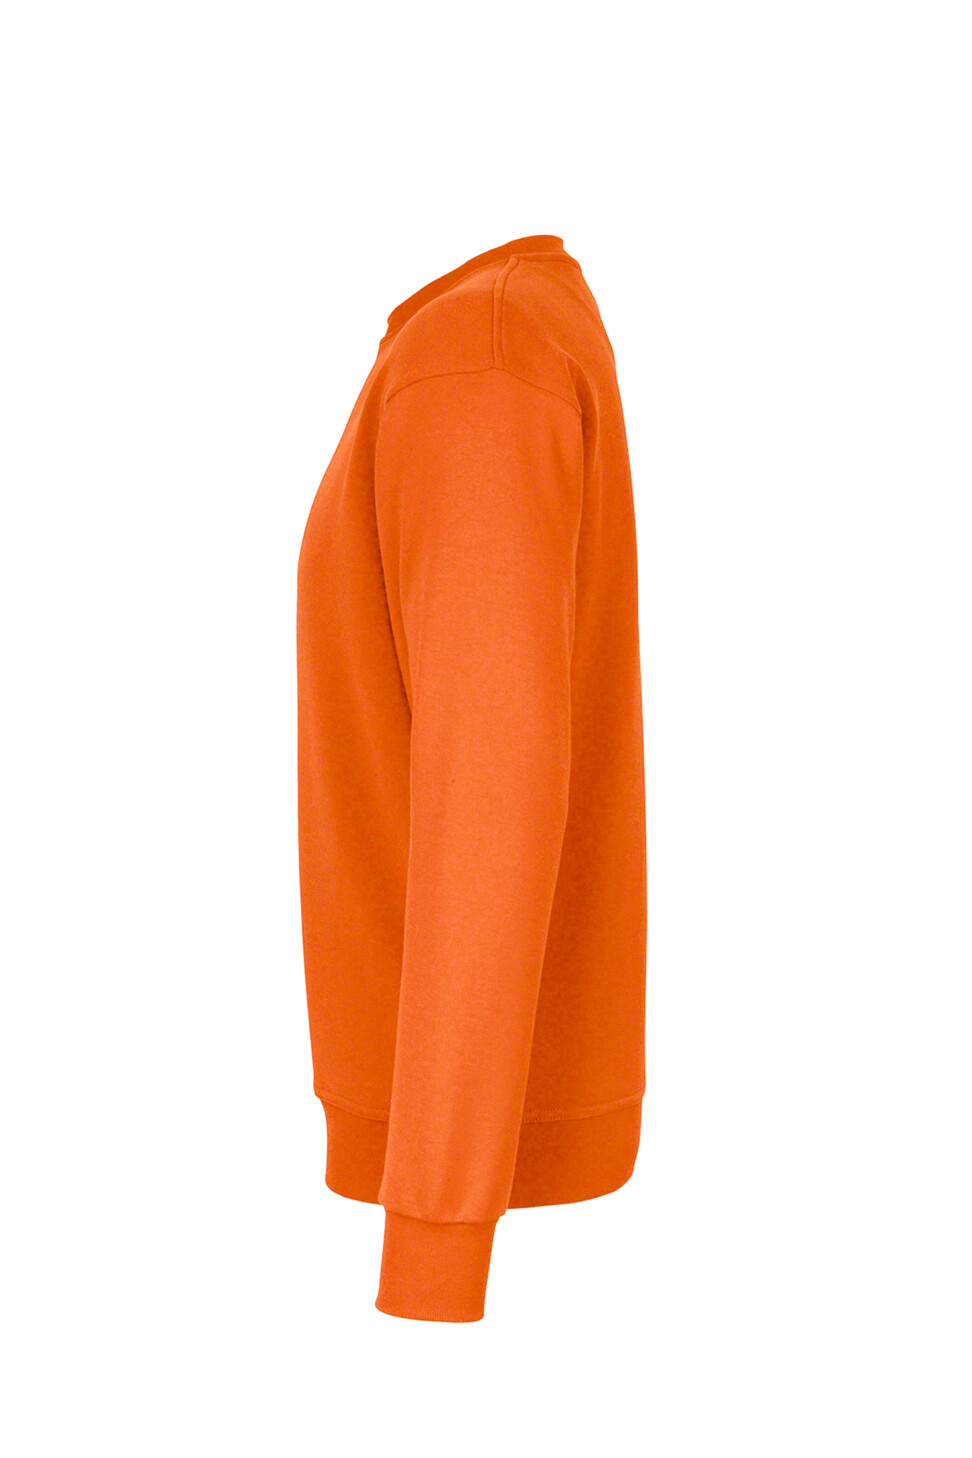 Hakro Herren Sweatshirt Performance, Orange